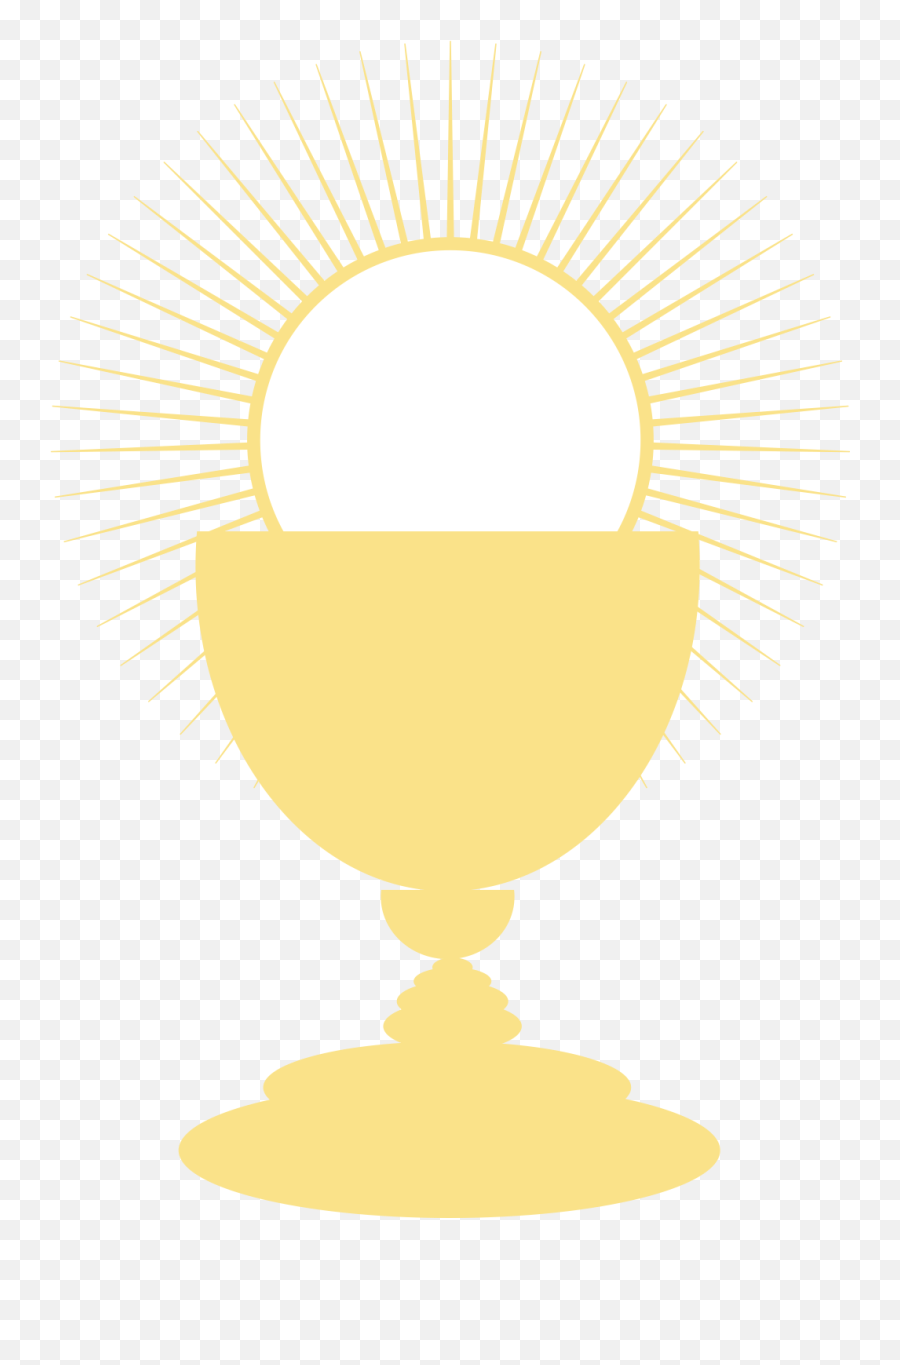 communion cup clip art